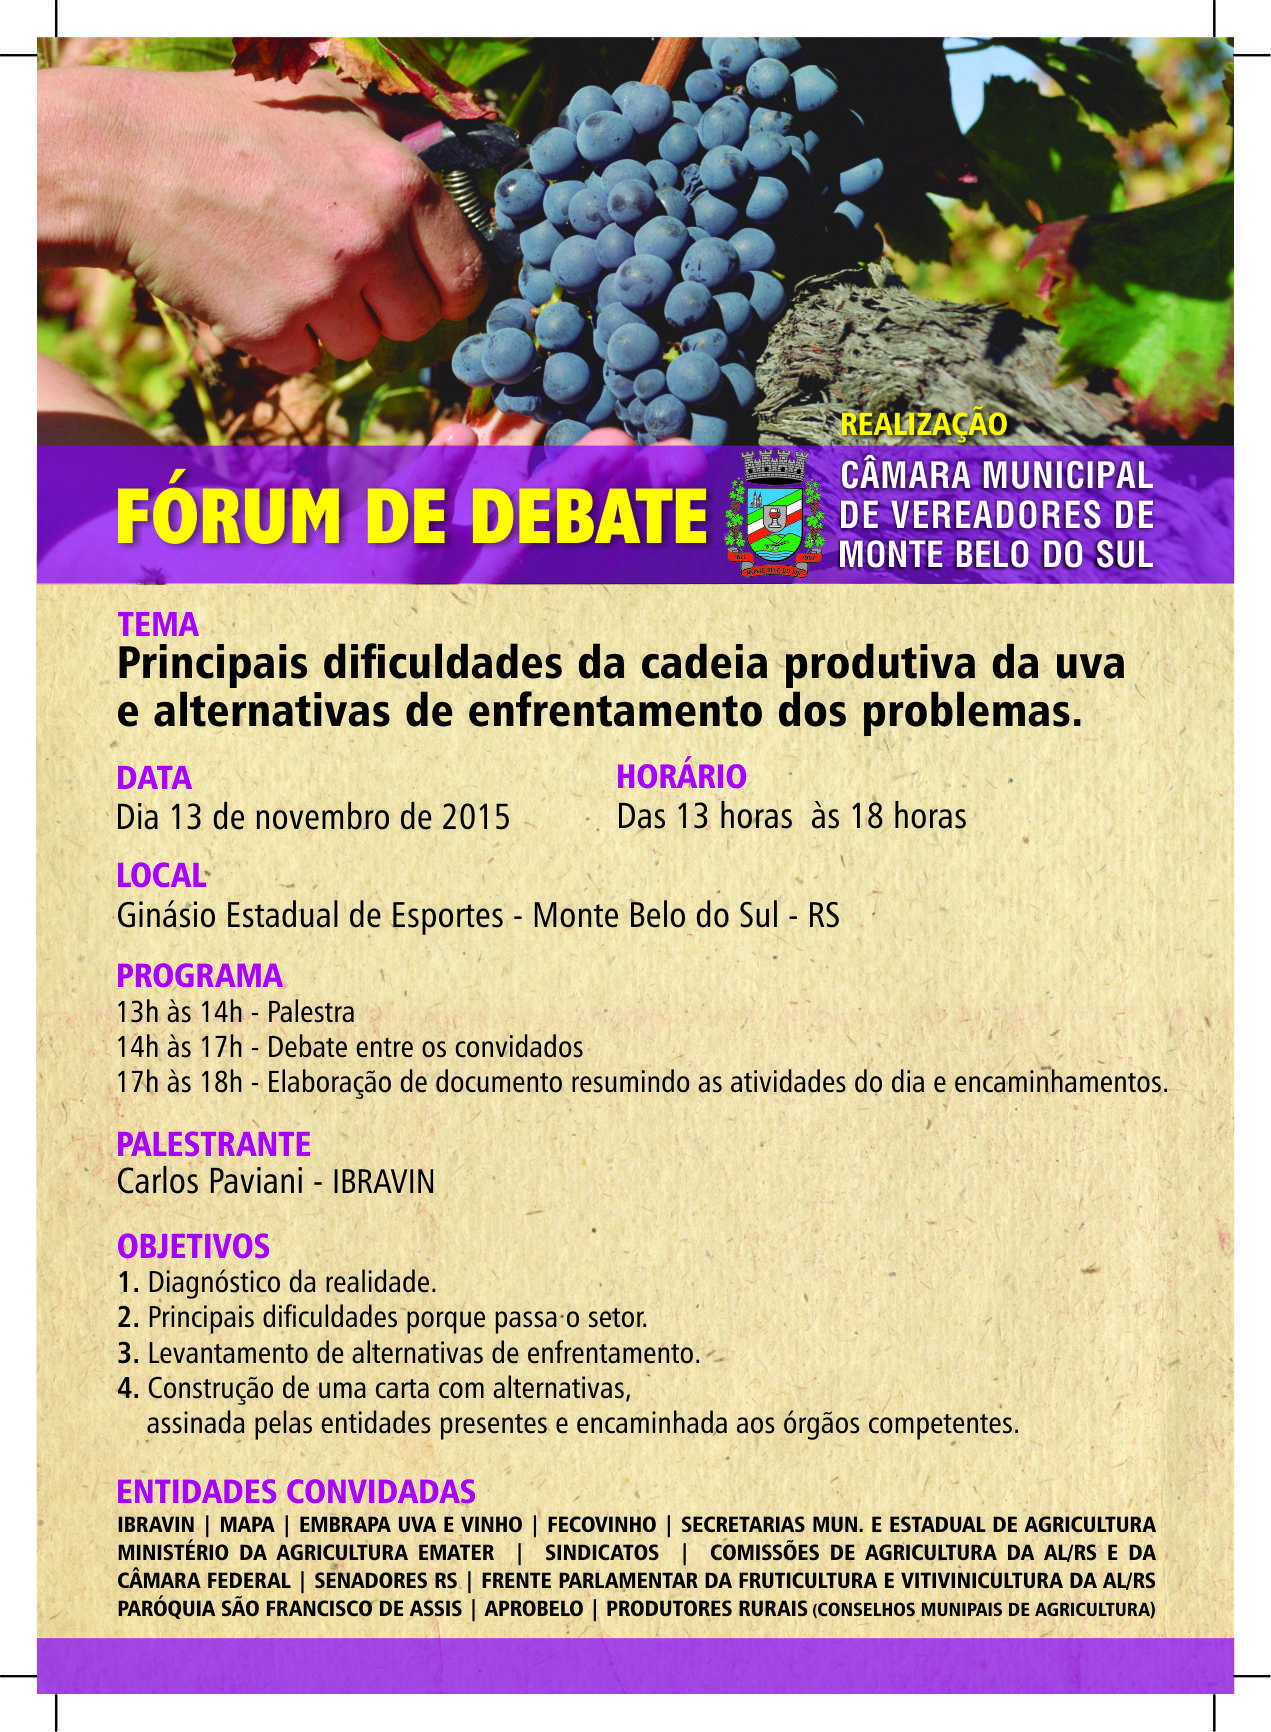 Fórum de Debate sobre a vitivinicultura